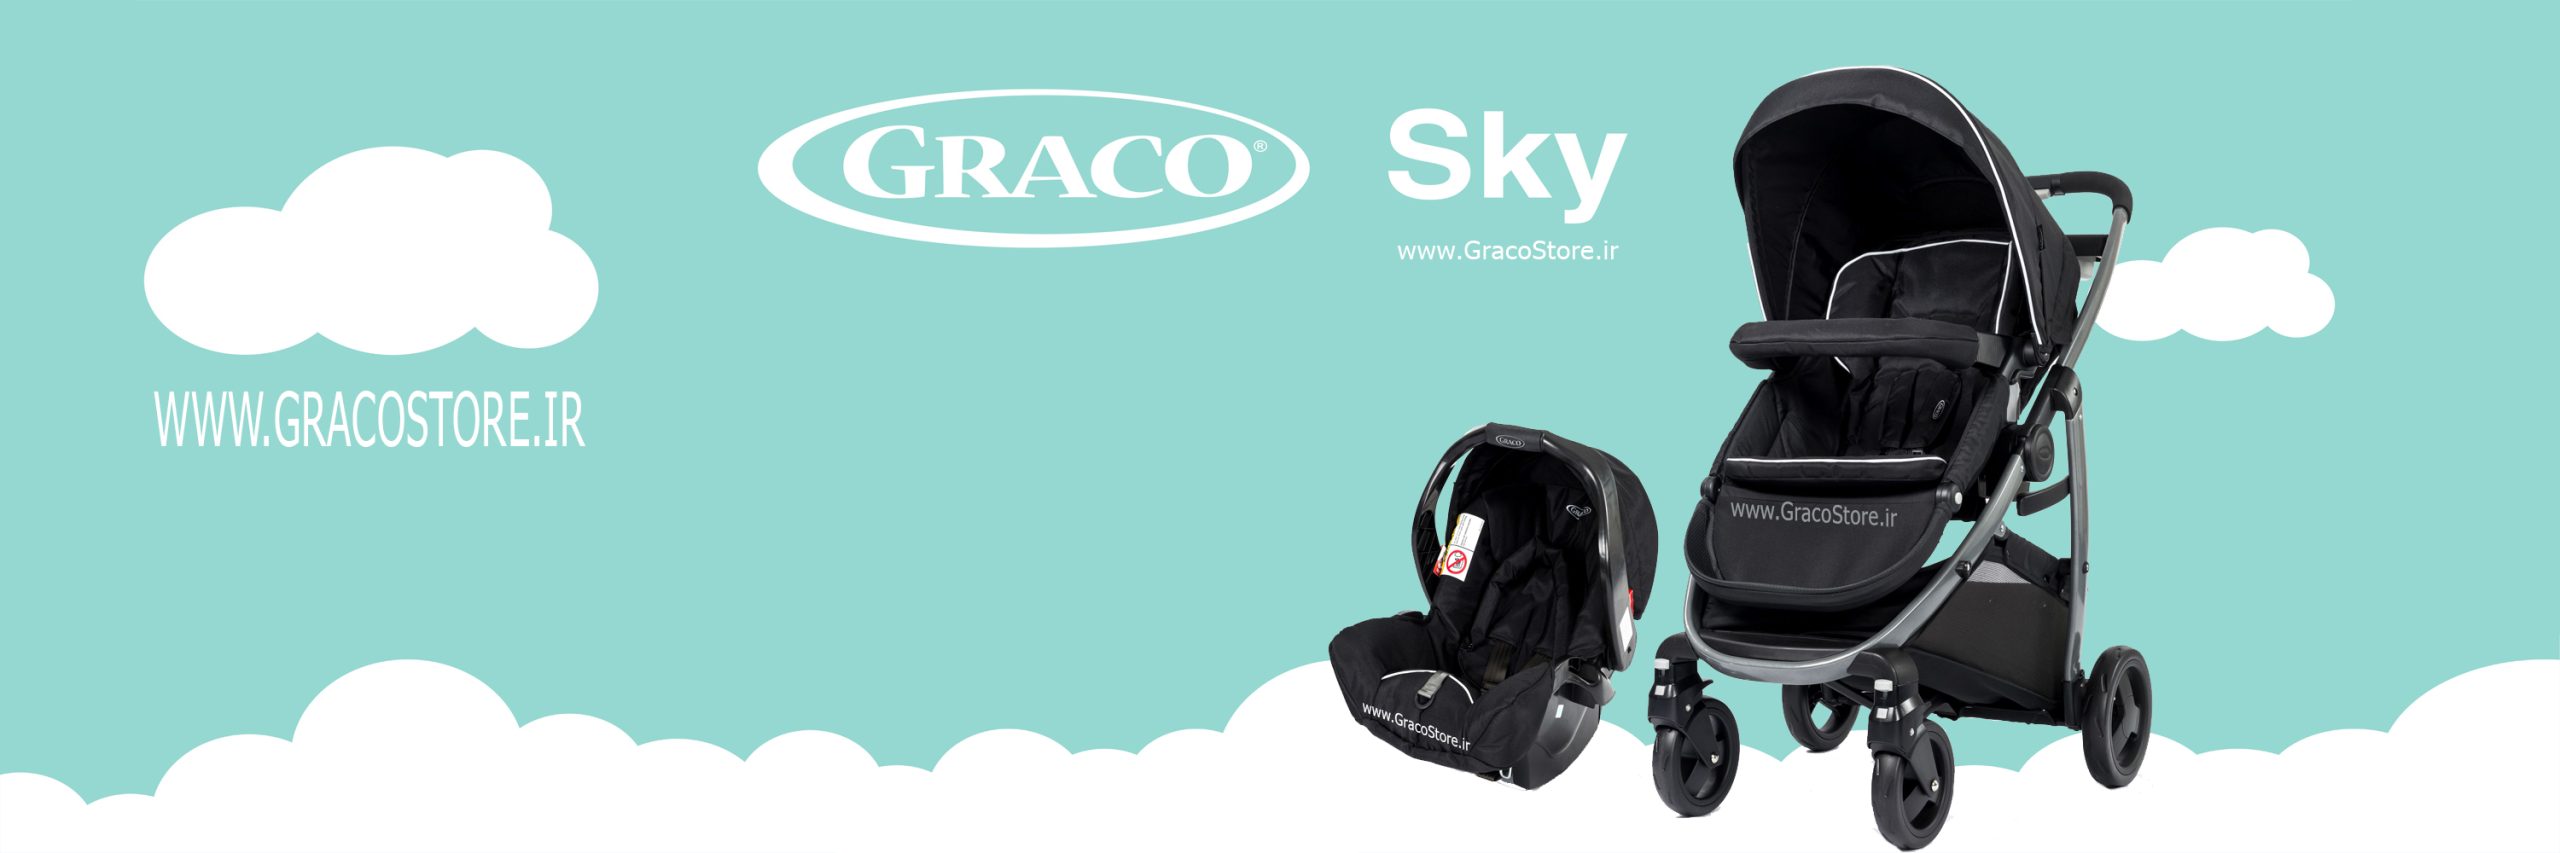 کالسکه و کریر گراکو مدل Sky Black Night, کالسکه و کریر گراکو مدل Sky, کالسکه و کریر گراکو, کالسکه گراکو